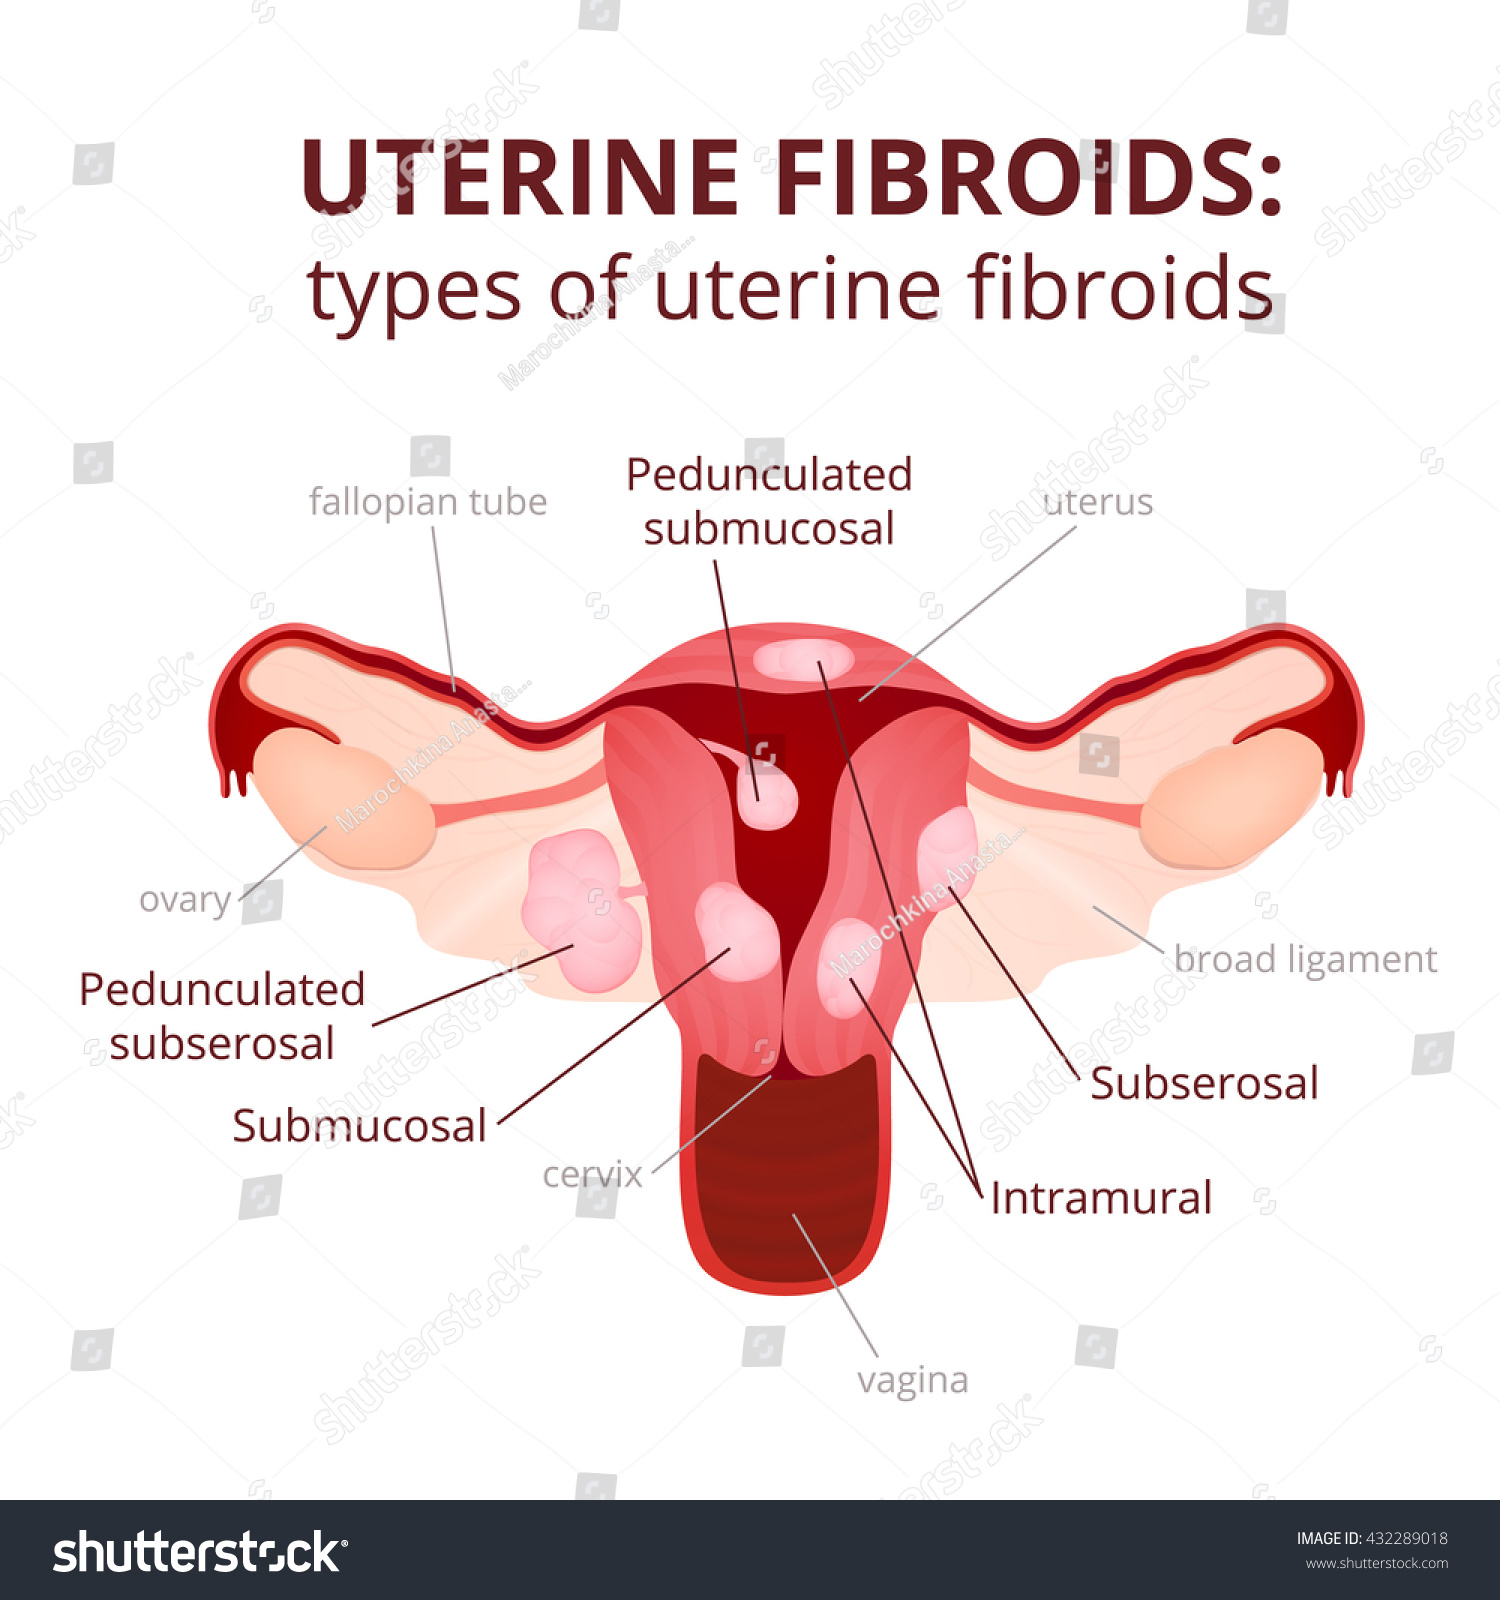 uterine fibroids, tumors types of scheme, schem